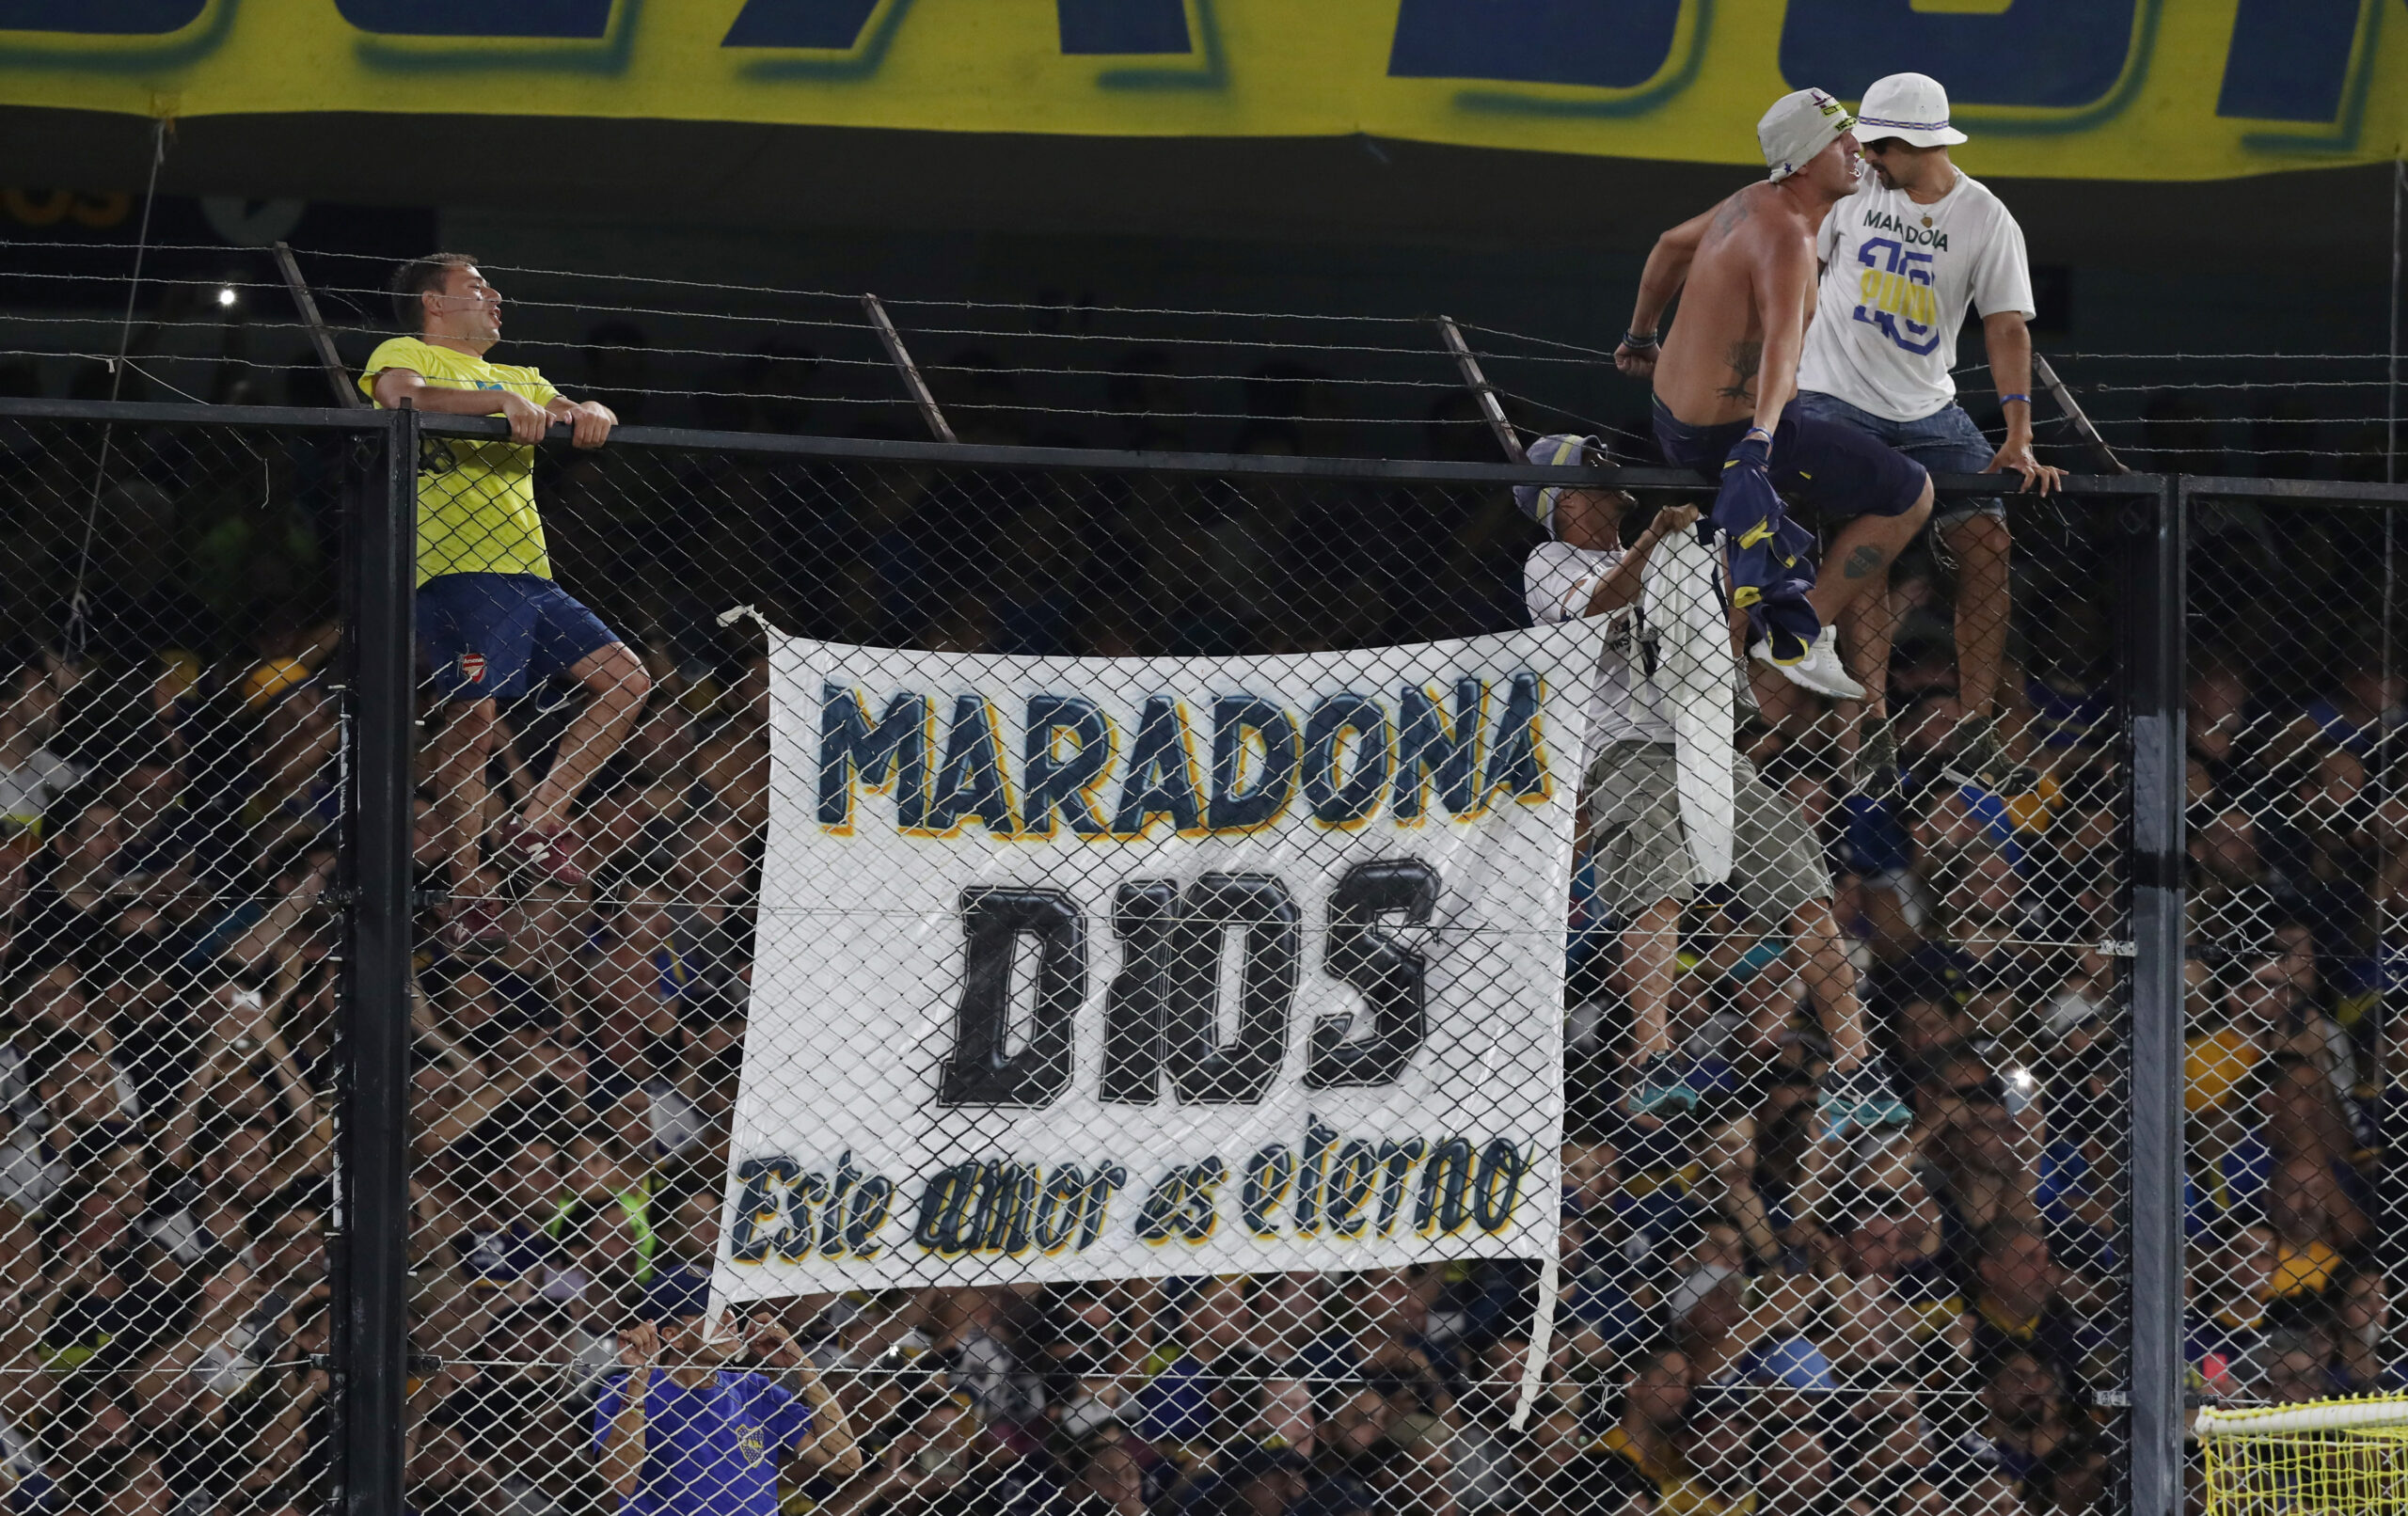 Foto de archivo ilustrativa de una bandera de la hinchada de Boca en homenaje a Diego Maradona en el partido con Gimnasia y Esgrima en La Bombonera de Buenos Aires.  Mar 7, 2020   REUTERS/Agustin Marcarian